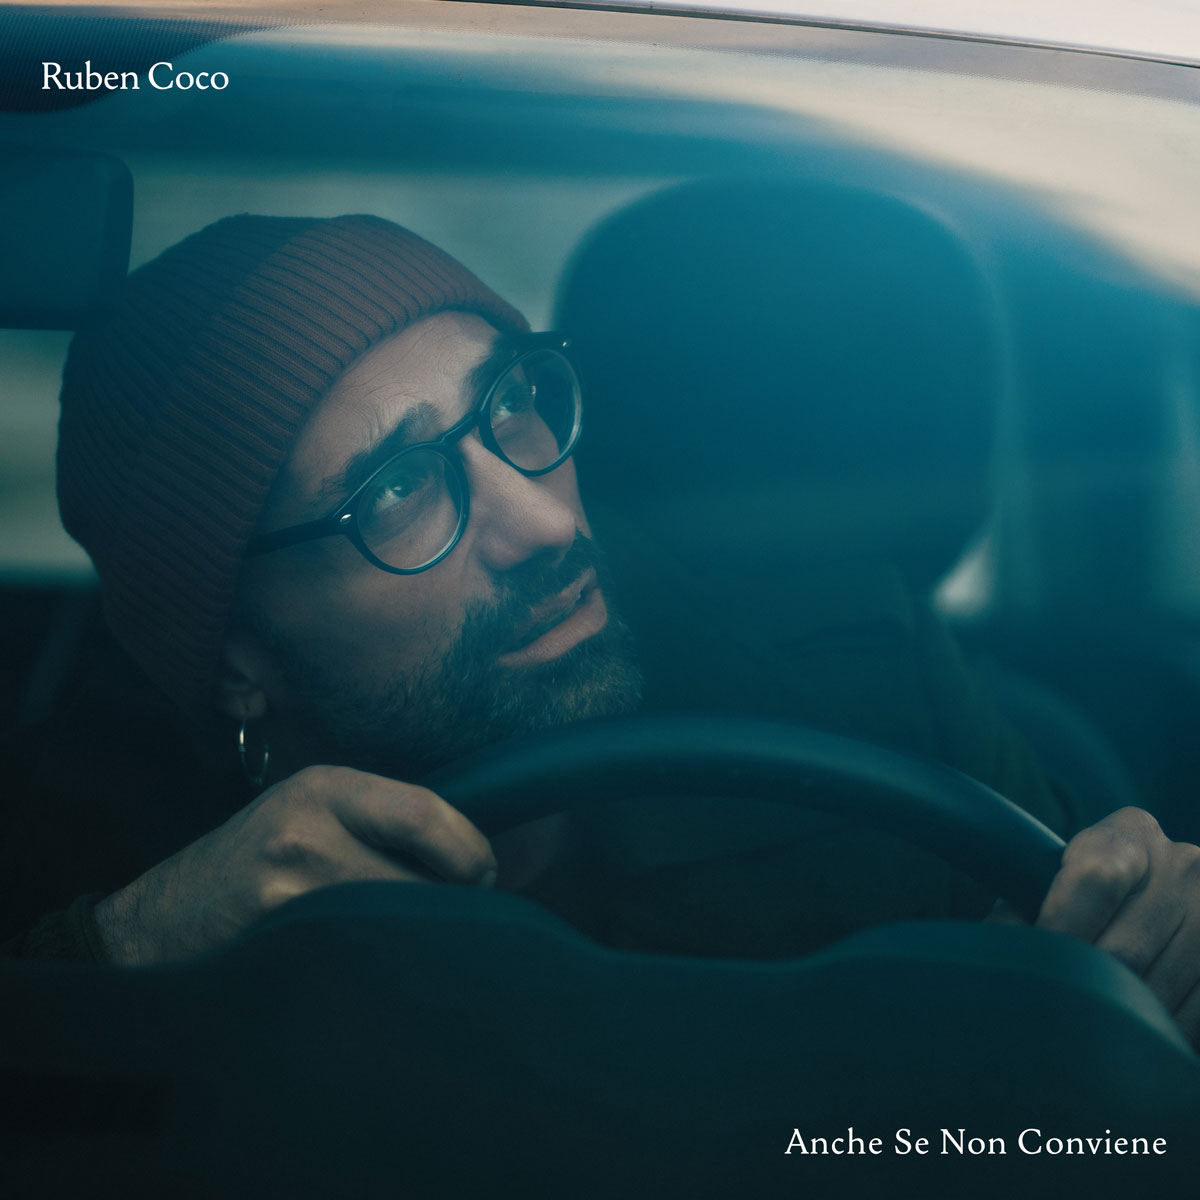 Ruben Coco: “Anche se non conviene” è il nuovo singolo